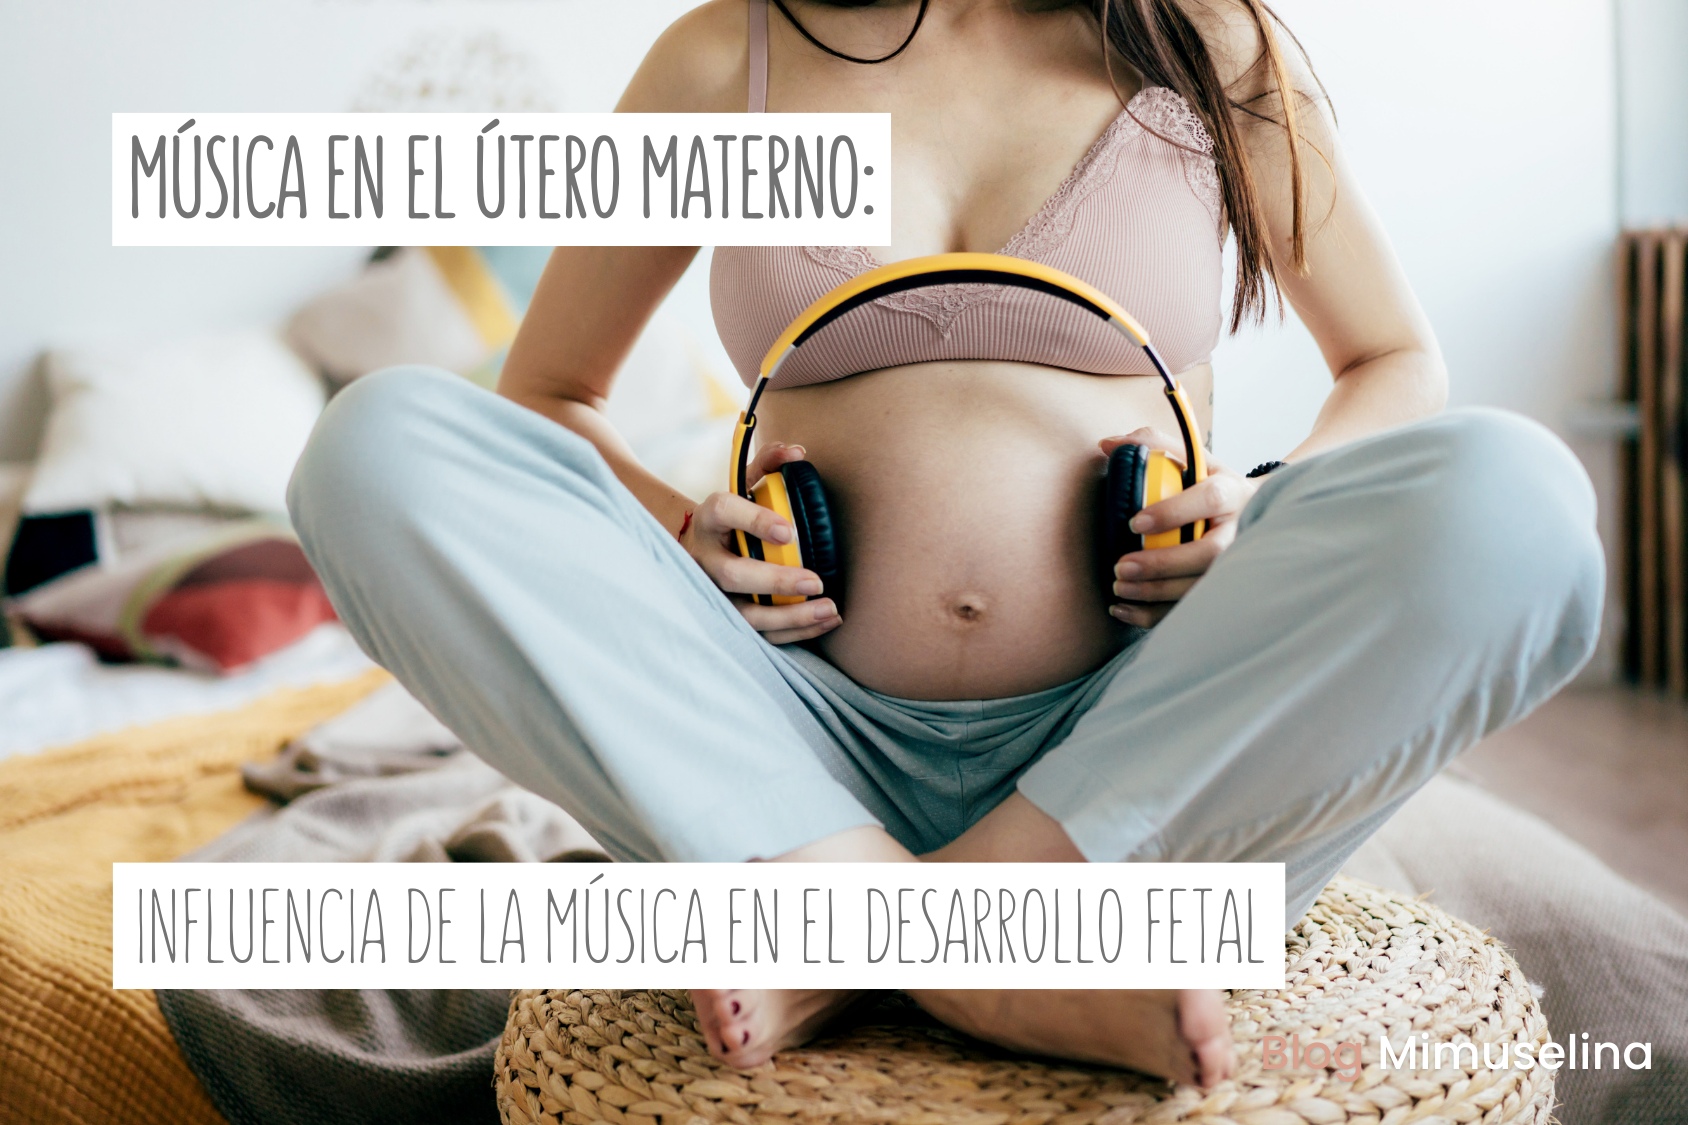 Música en el útero materno: influencia y beneficios para el desarrollo fetal